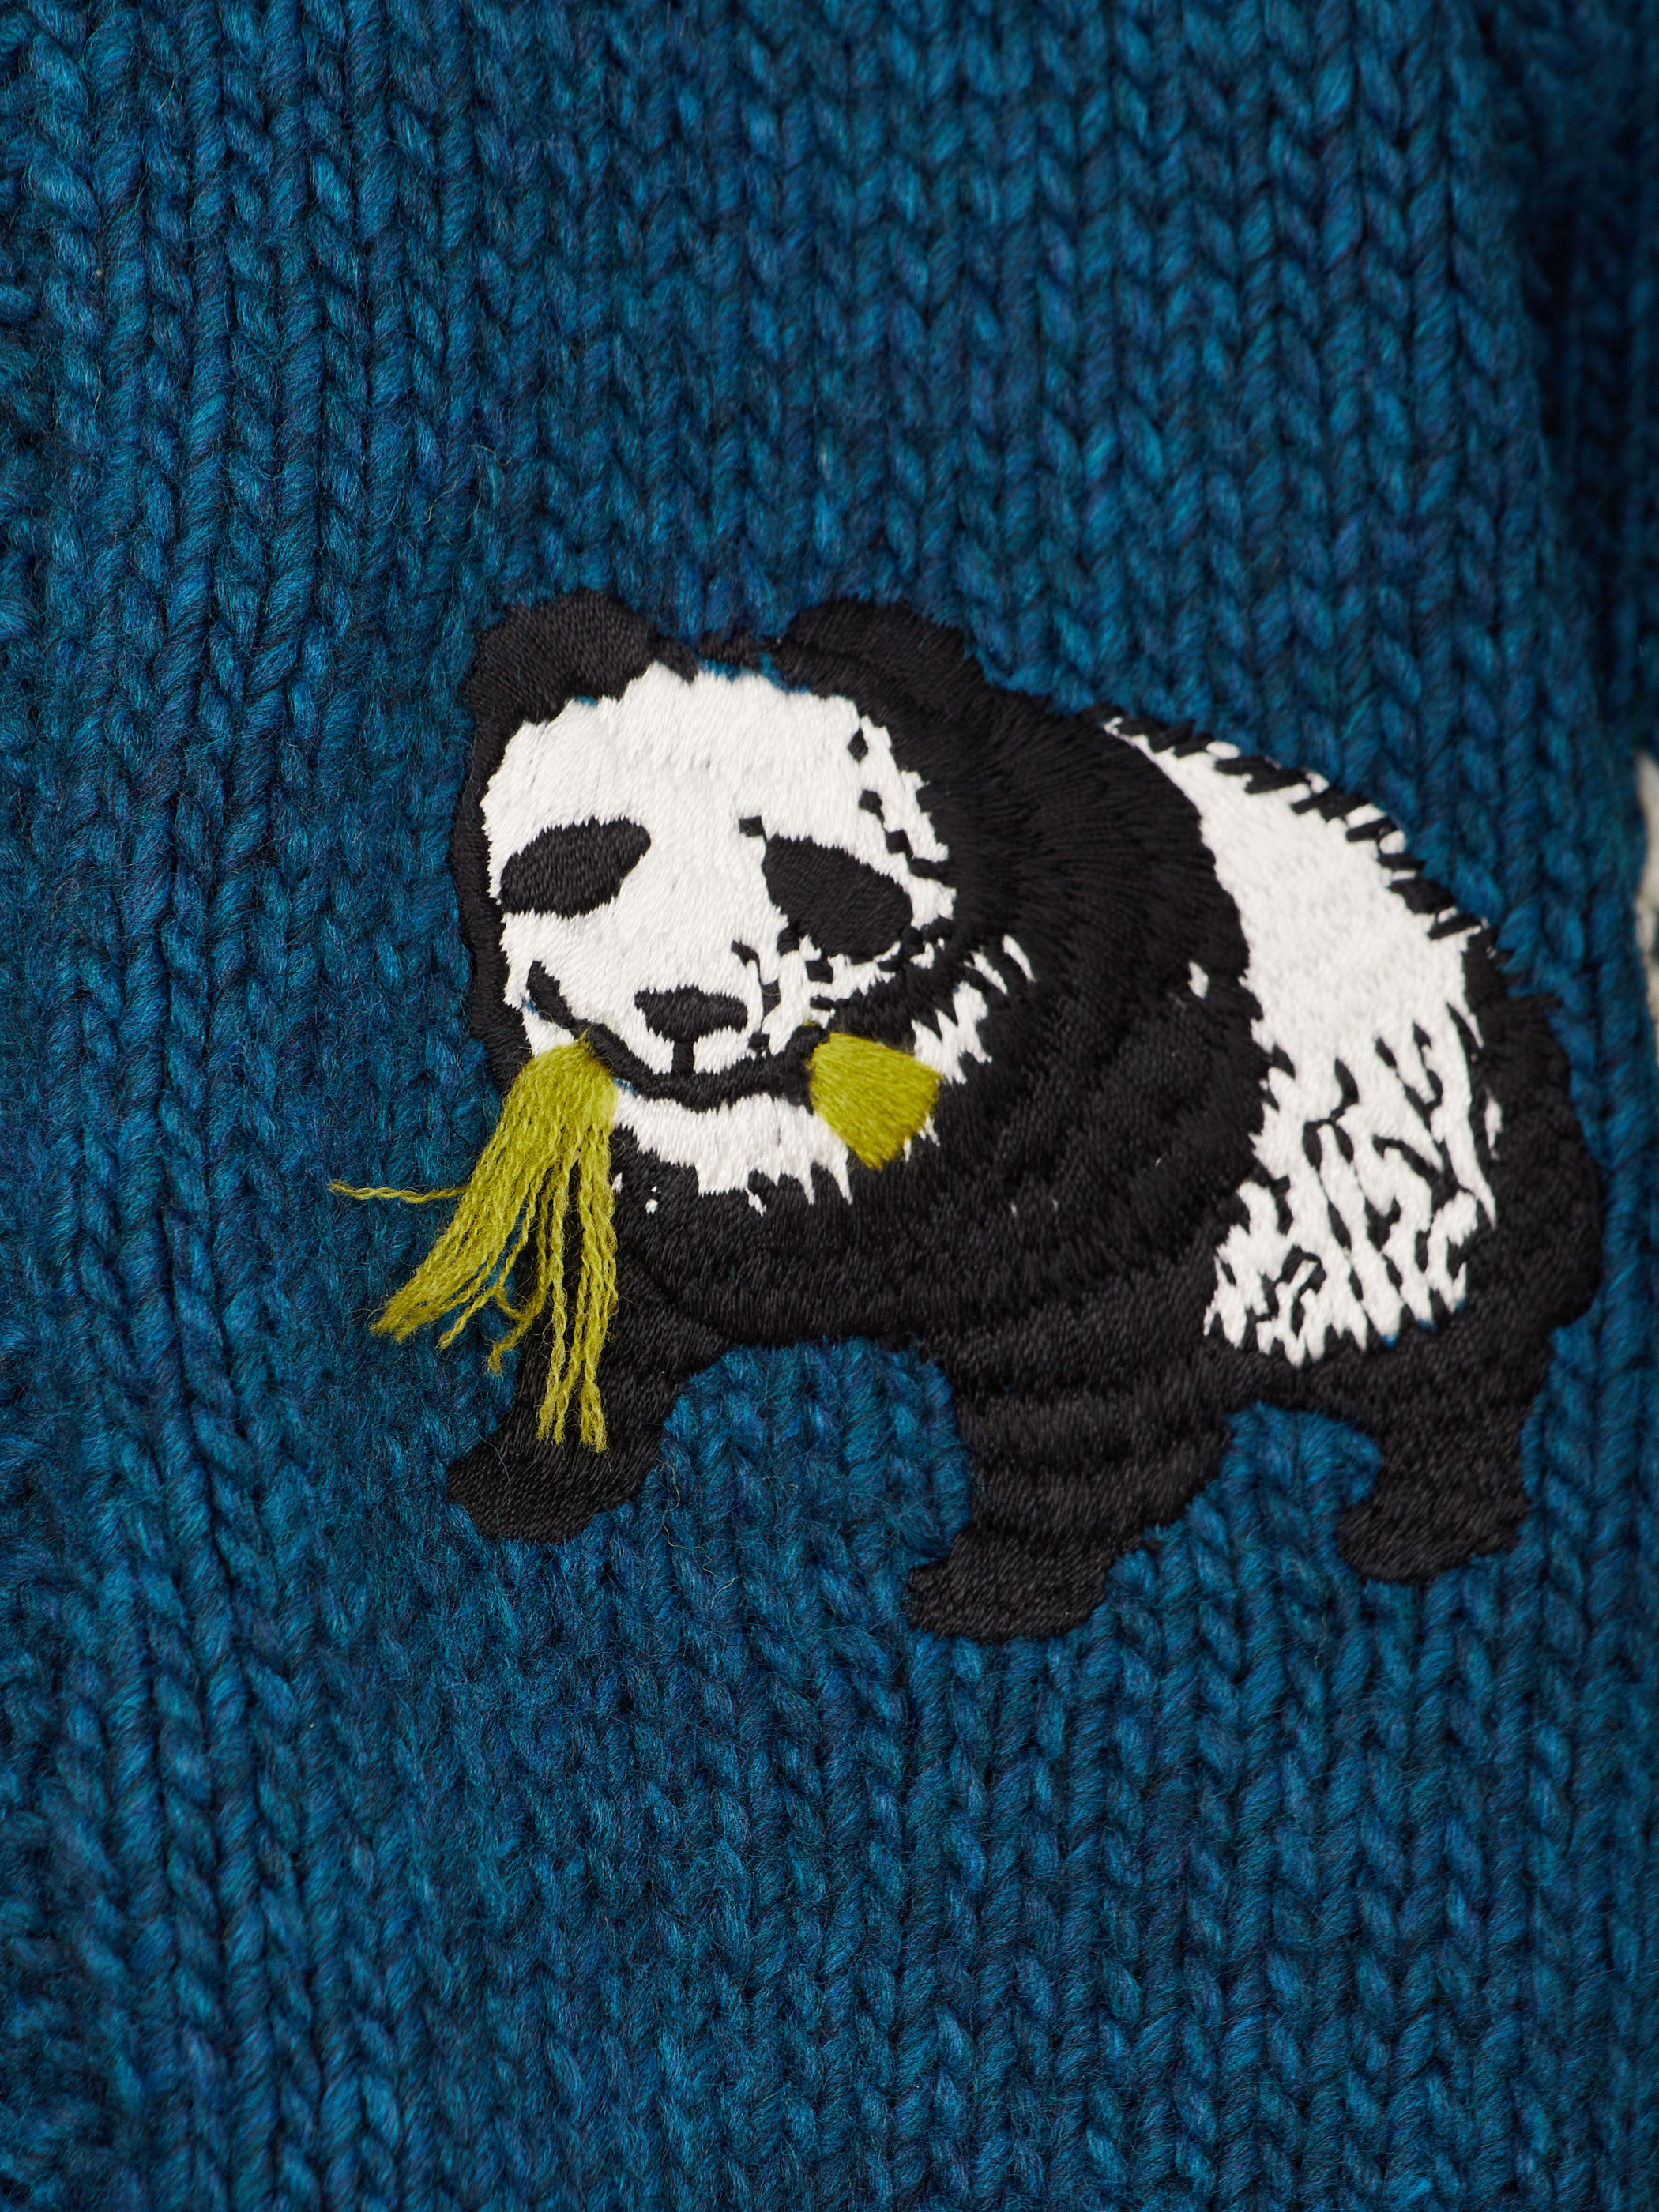 panda cowichan sweater・BLUE GREEN×LIME